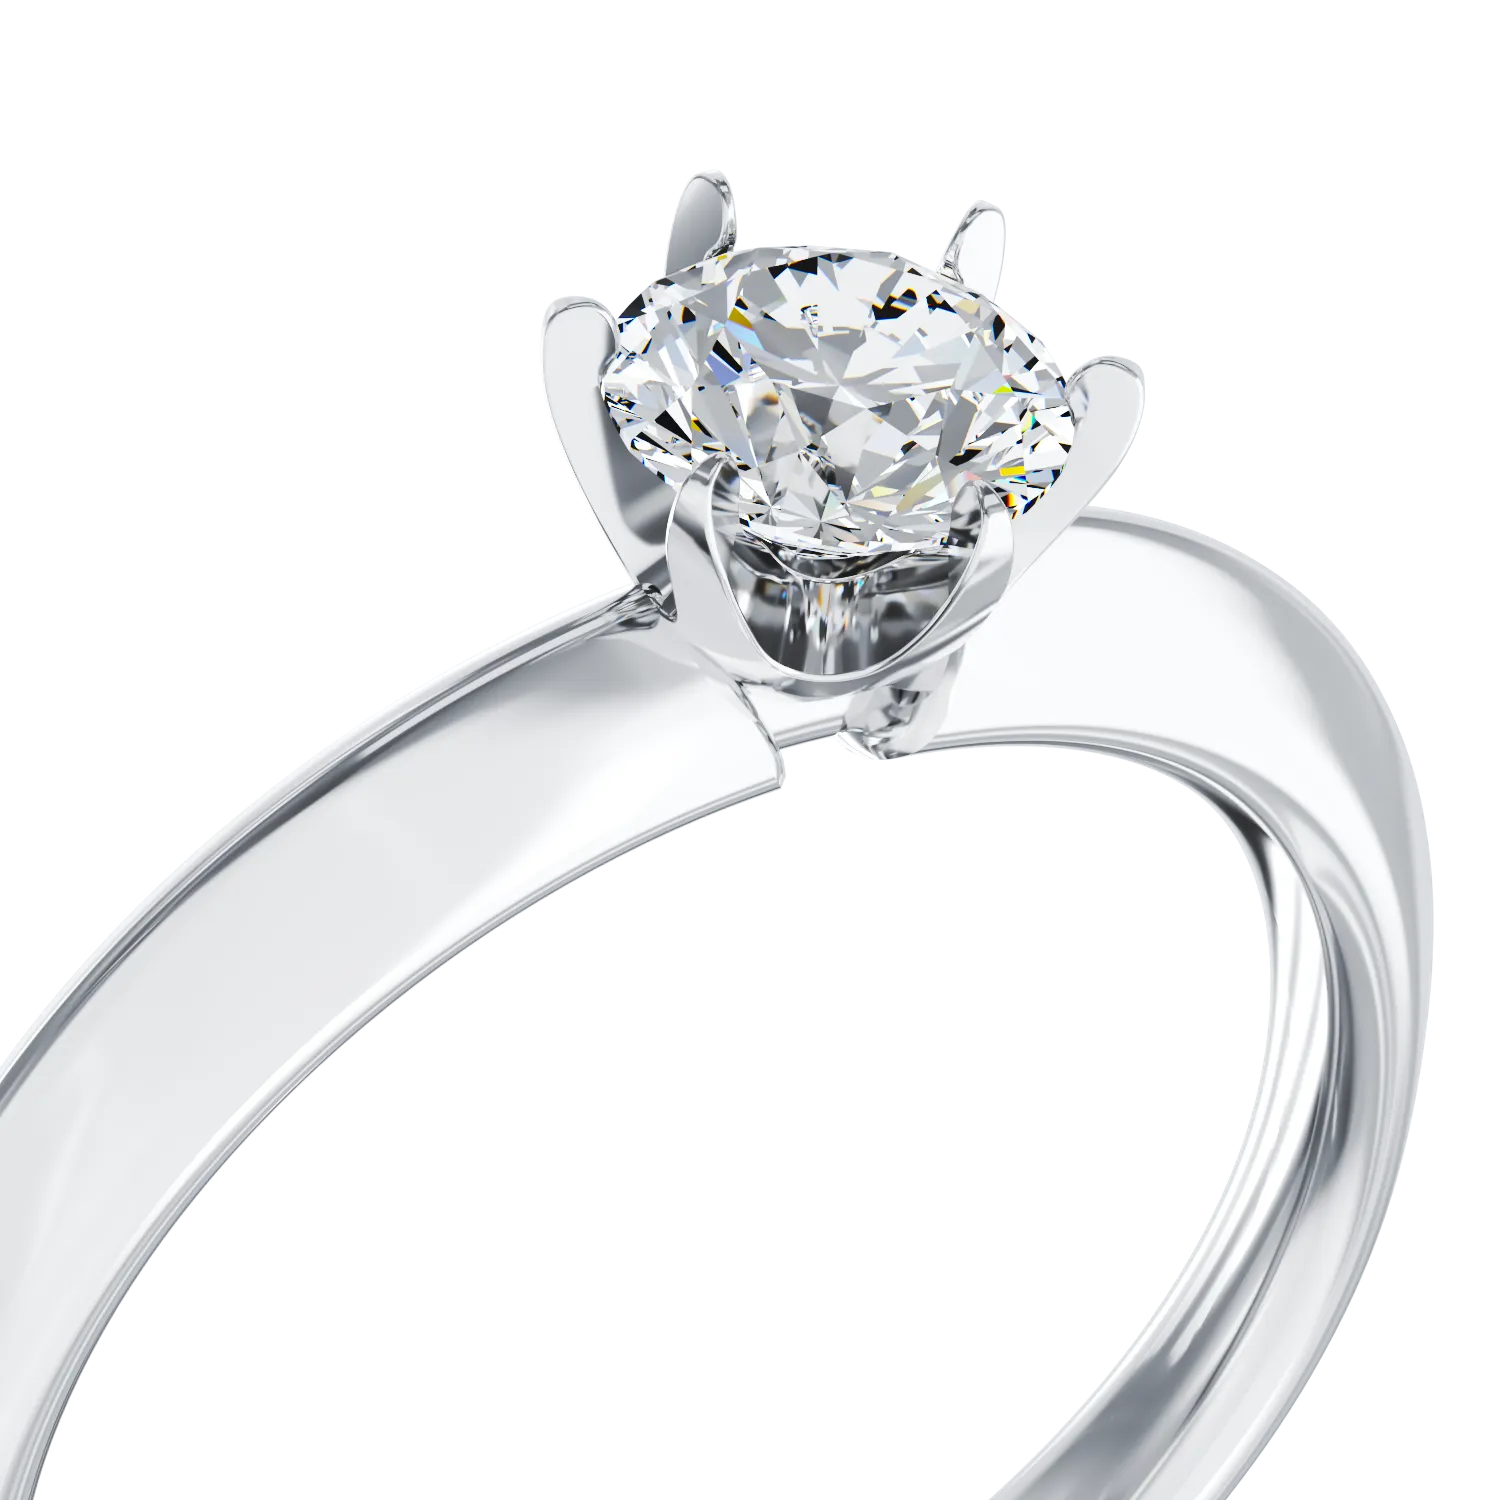 Eljegyzési gyűrű 18K-os fehér aranyból 0,4ct gyémánttal. Gramm: 3,35